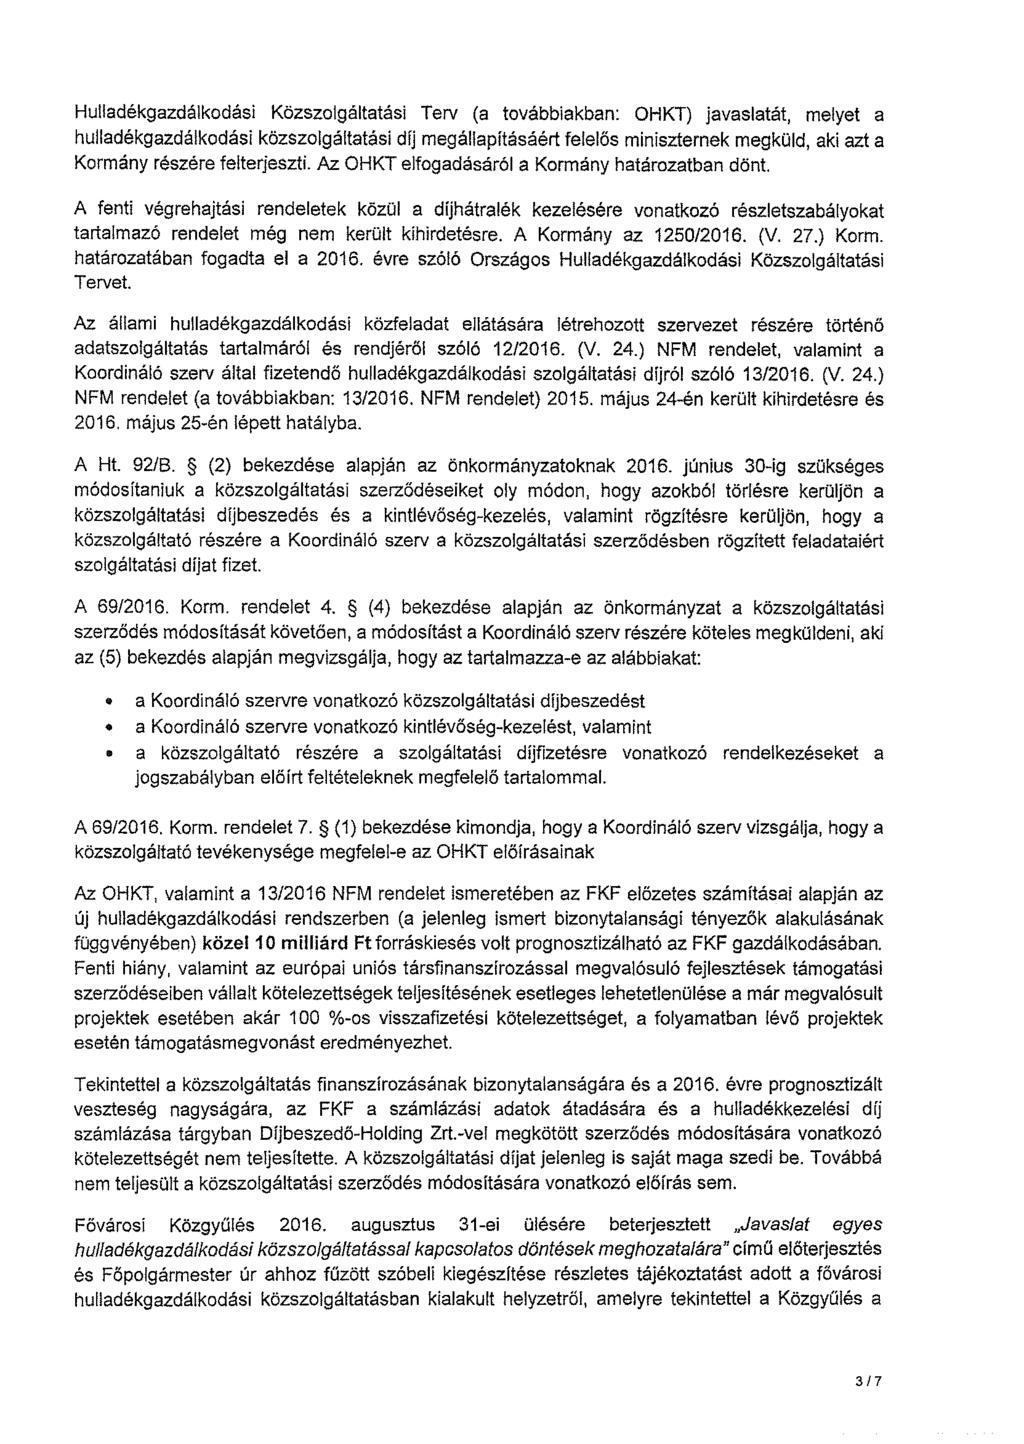 Hulladékgazdálkodási Közszolgáltatási Terv (a továbbiakban: OHKT) javaslatát, melyet a hulladékgazdálkodási közszolgáltatási díj megállapításáért felelös miniszternek megküld, aki azt a Kormány